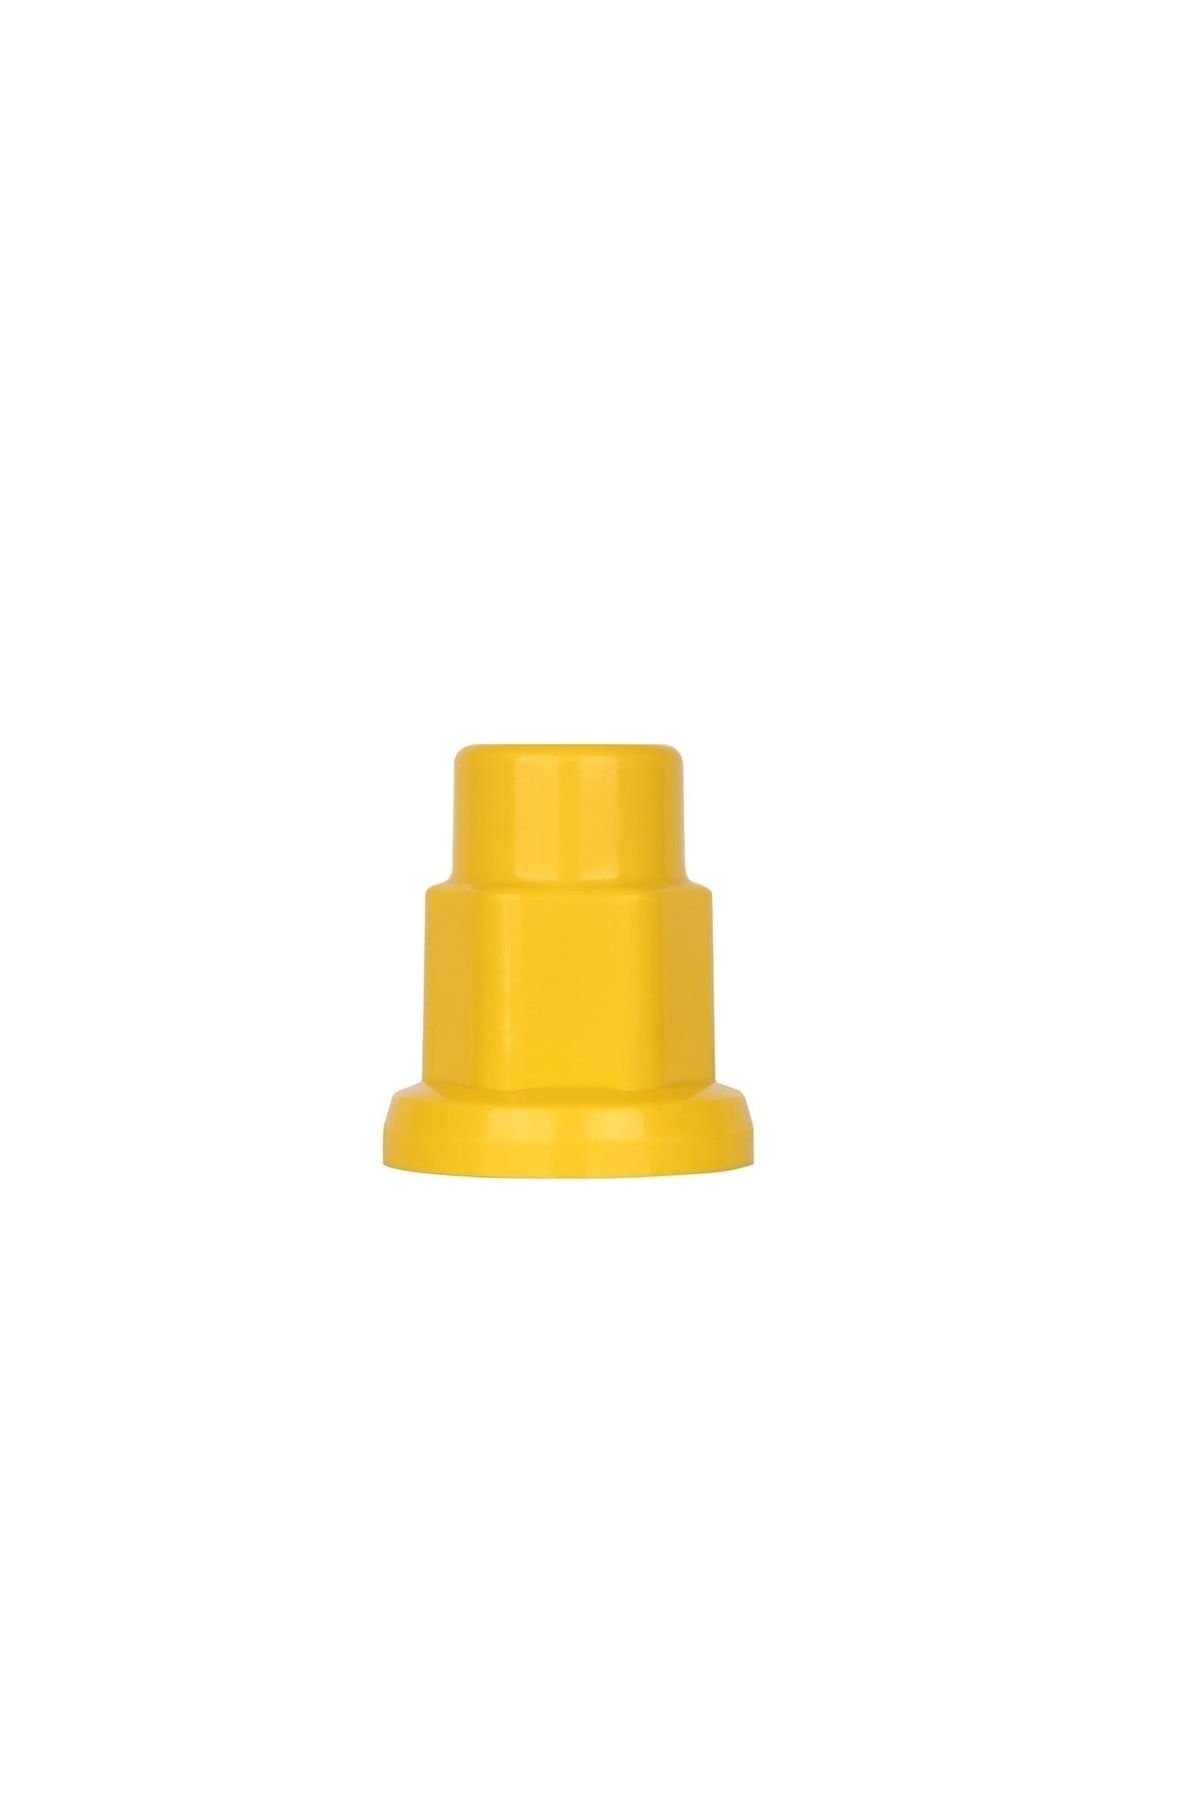 Yerli Tır Bijon Kapağı Sarı Renk 32mm 20 Adet